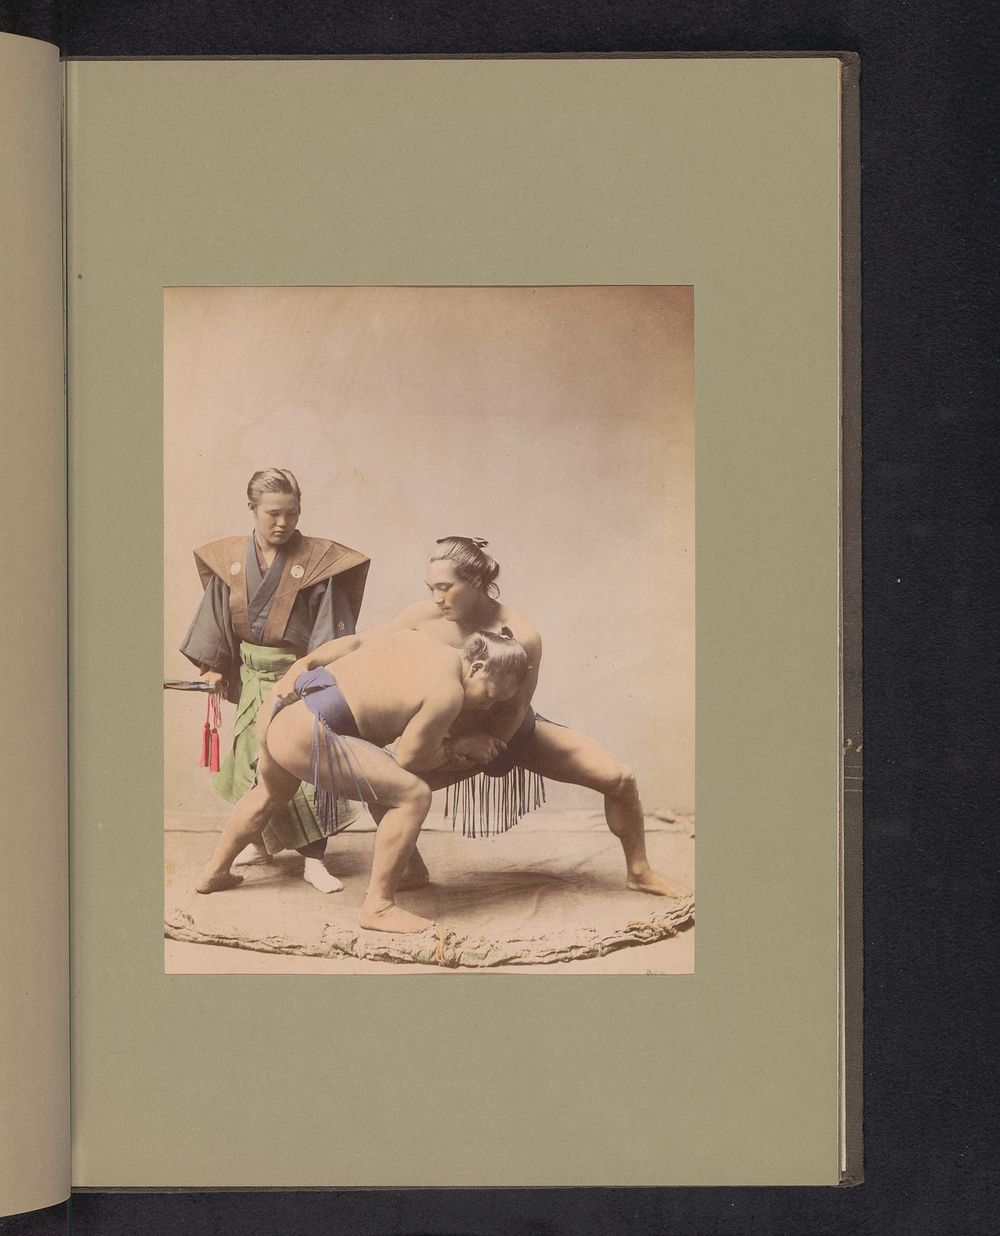 Twee sumoworstelaars en een scheidsrechter (c. 1887 - in or before 1897) by anonymous and anonymous